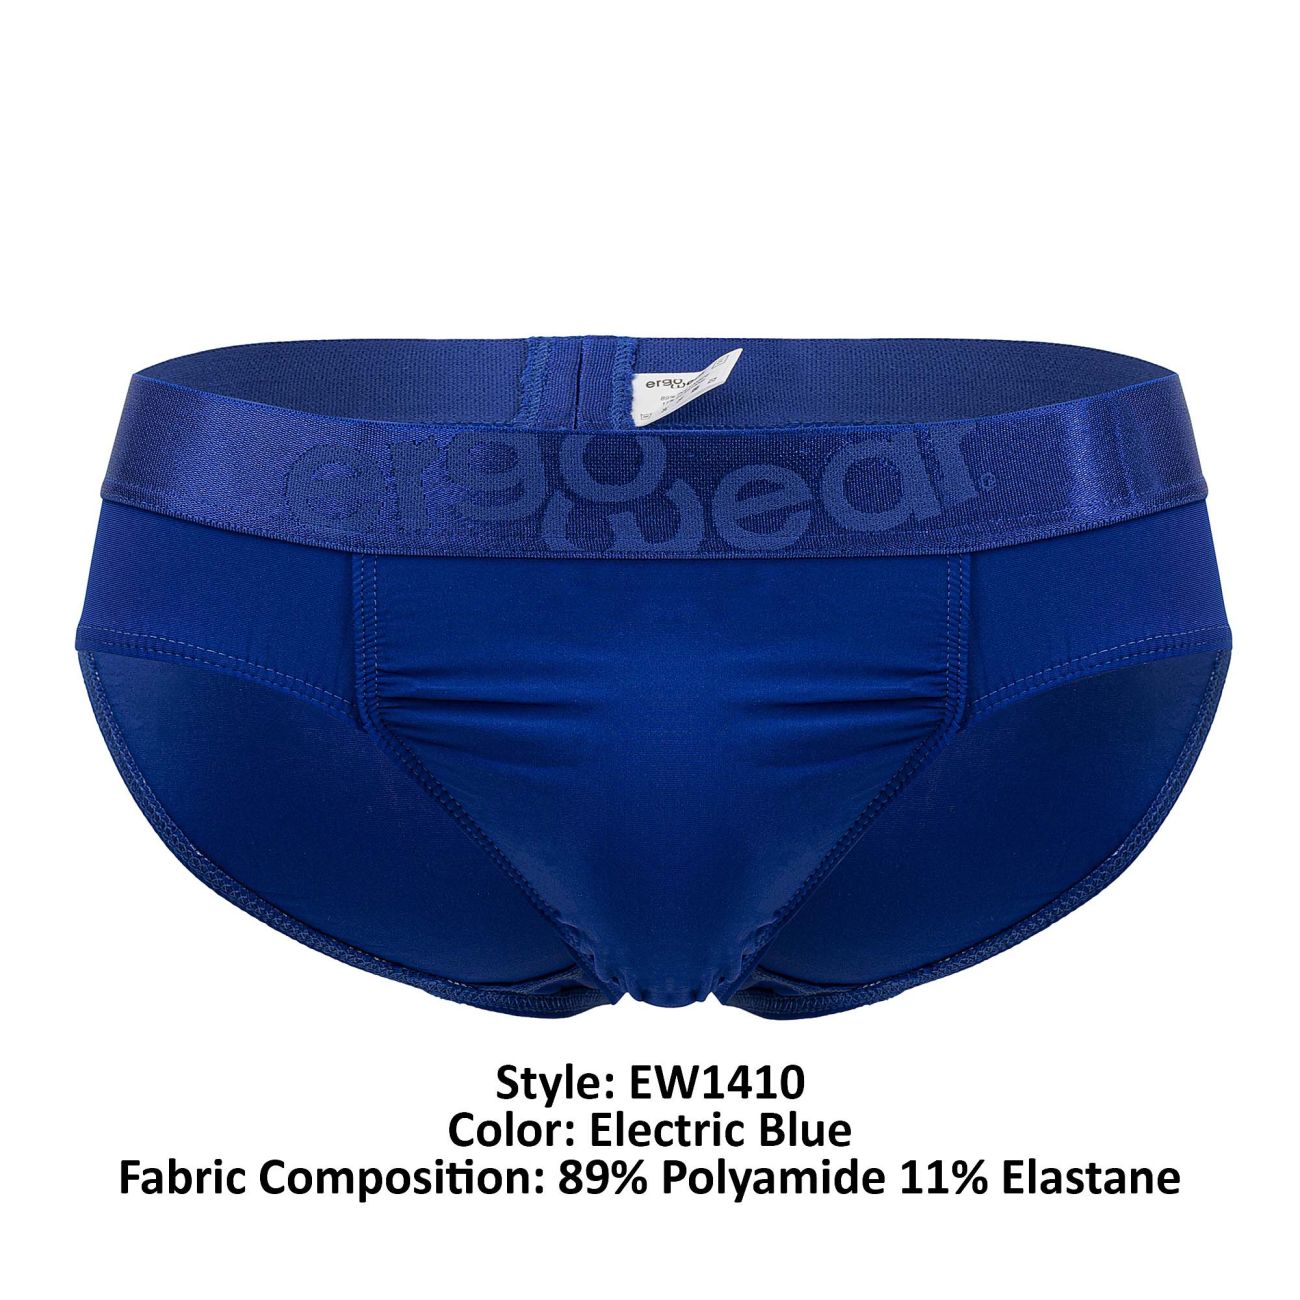 ErgoWear EW1410 FEEL XX Briefs Electric Blue